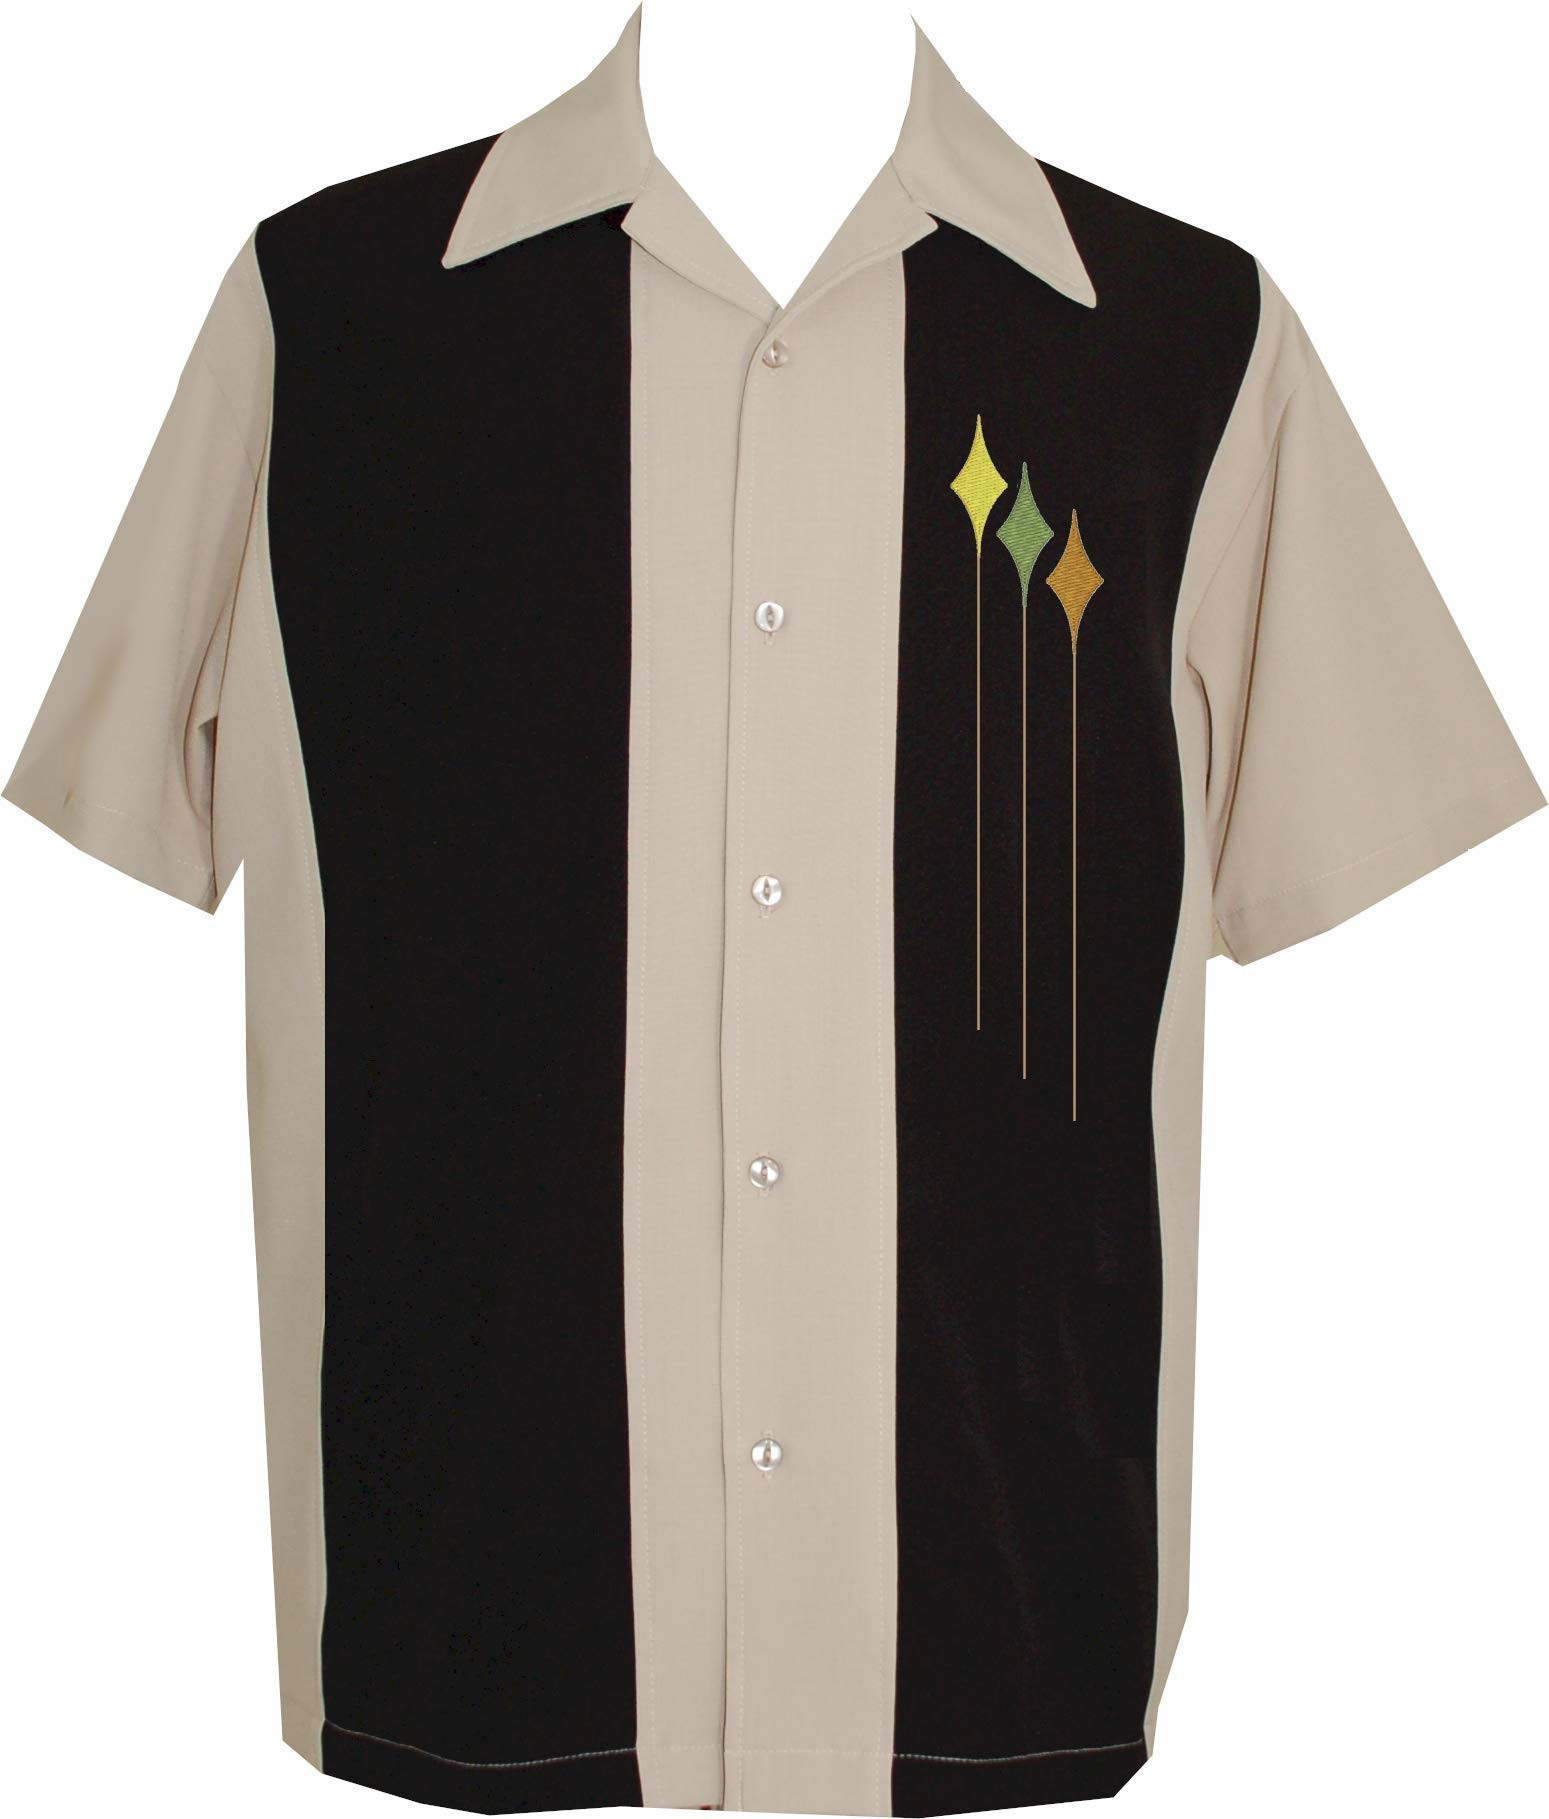 Charlie Sheen Bowling Shirt | Two Panel Retro Bowling Shirt